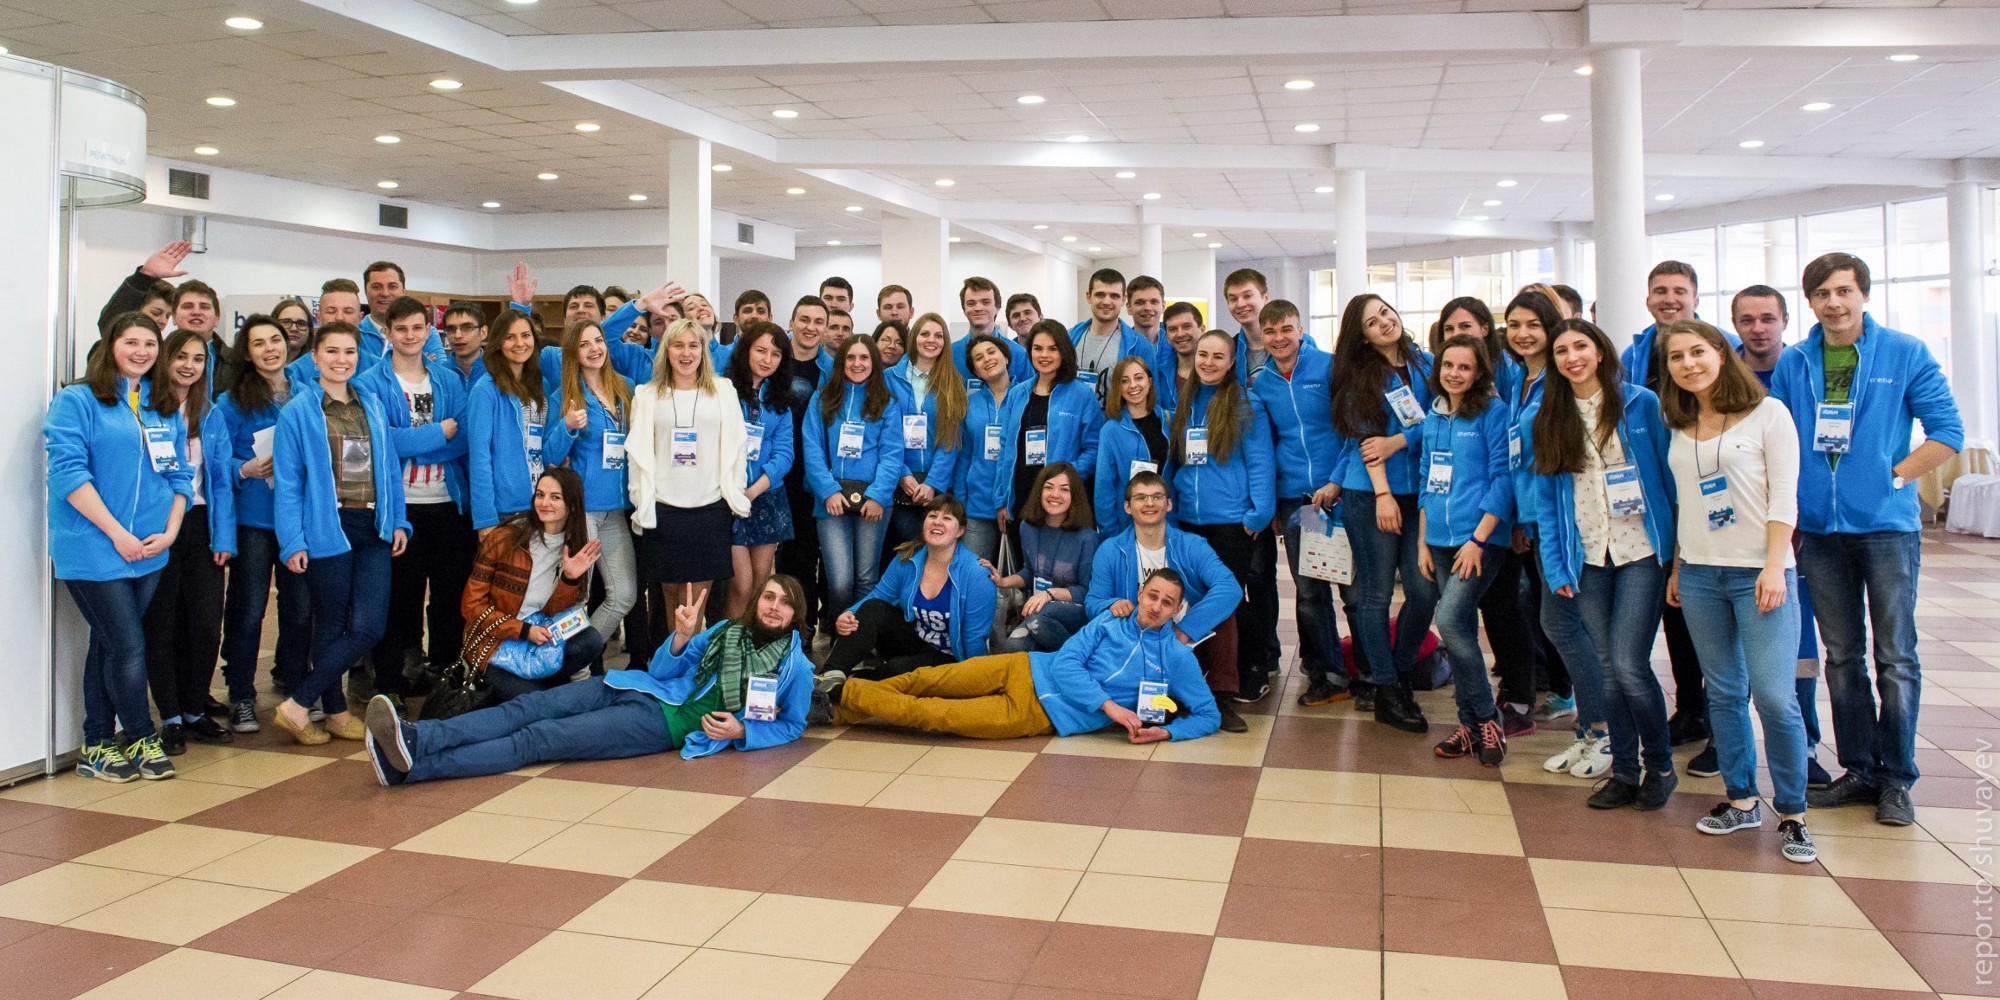 Найбільша в Україні конференція iForum шукає волонтерів